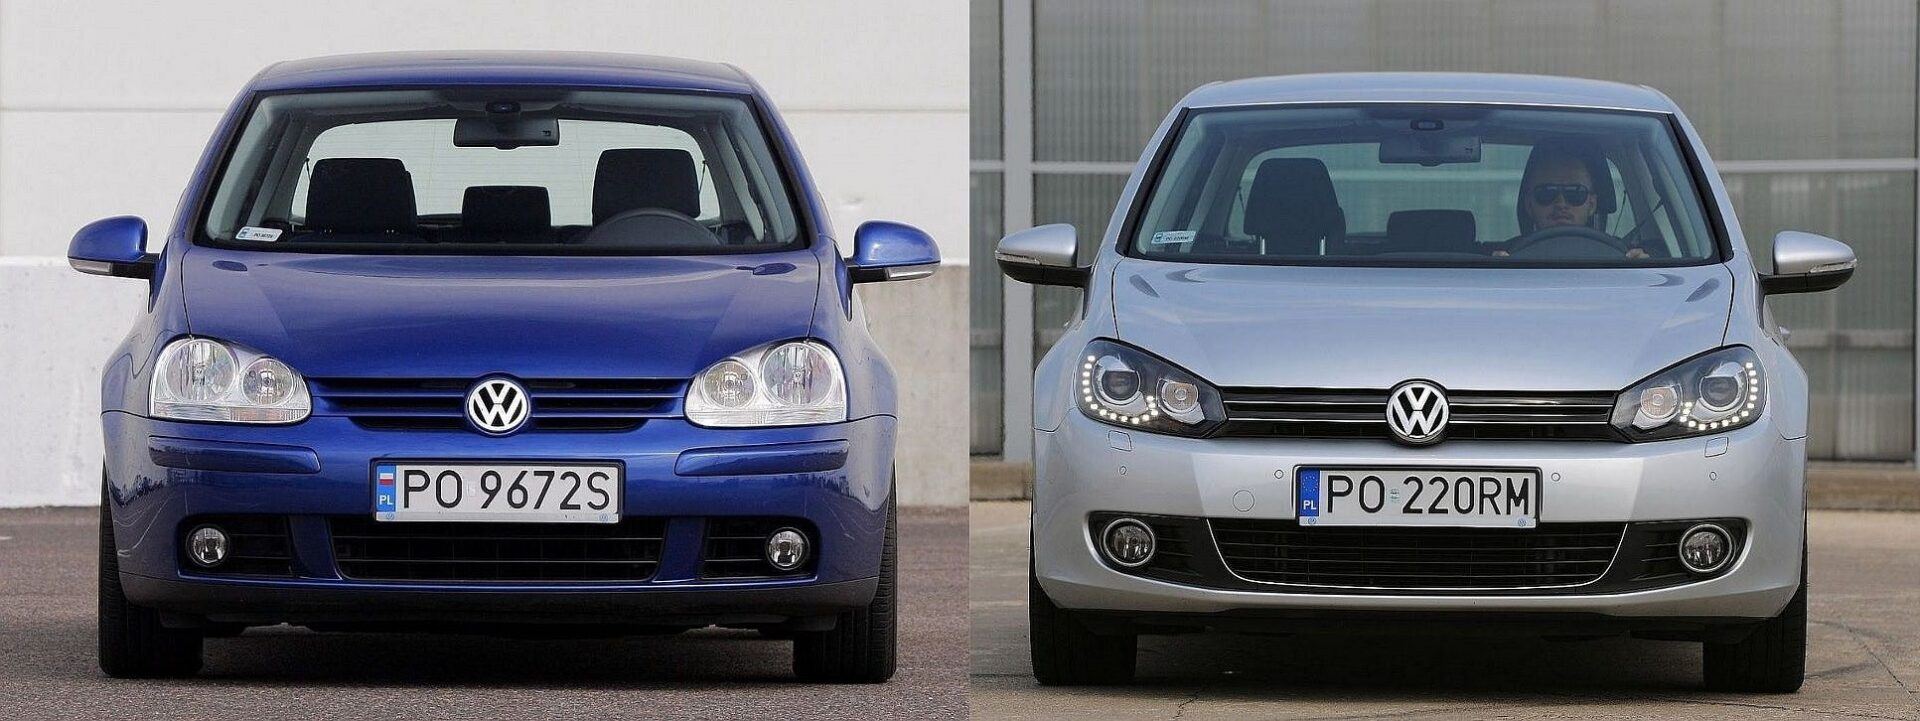 Używany Volkswagen Golf V i Golf VI którą generację wybrać?